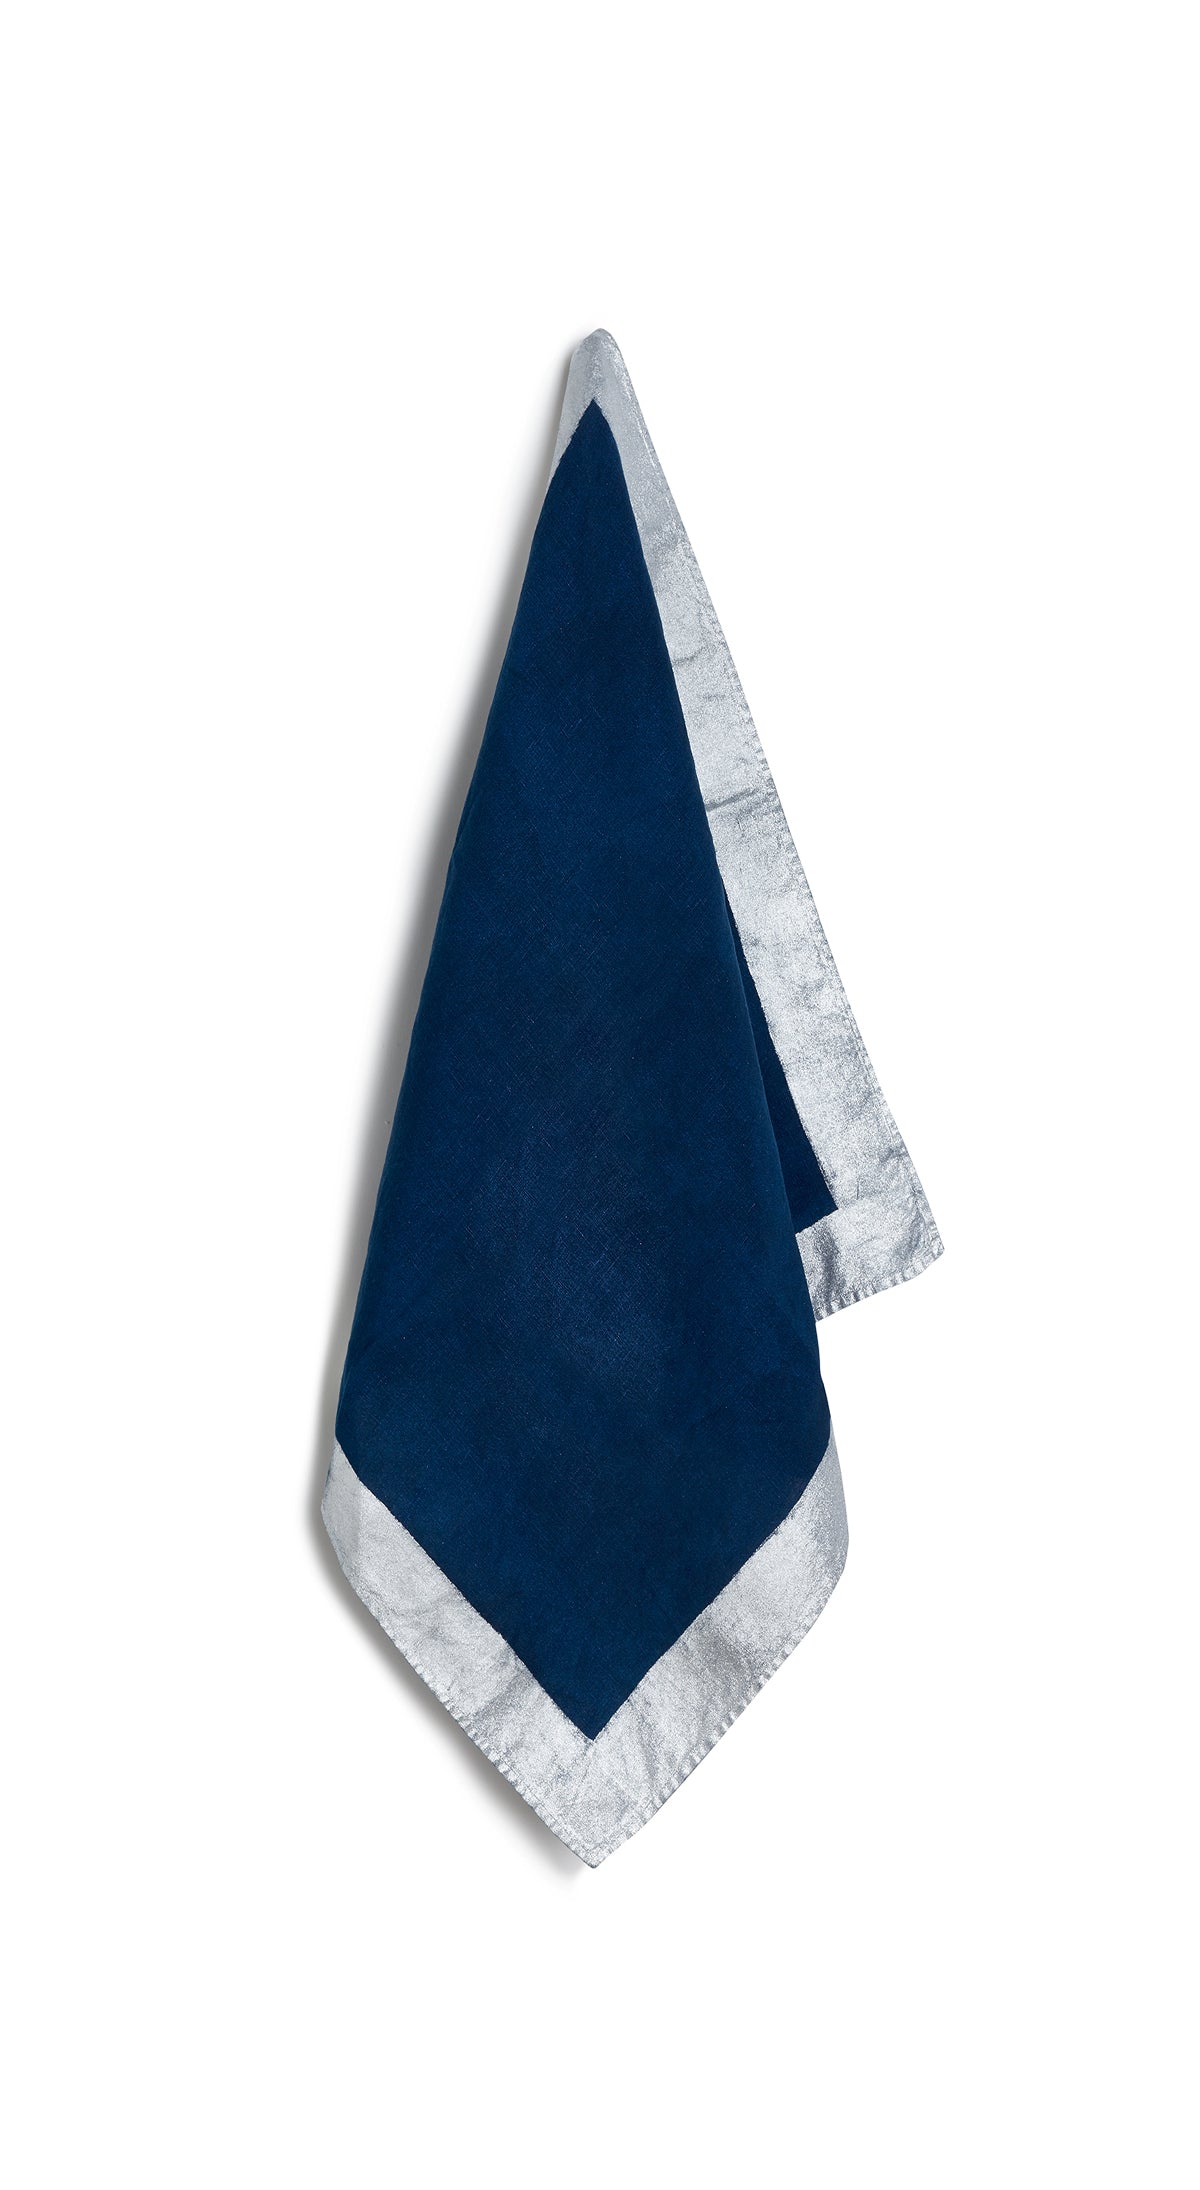 Silver Edge Linen Napkin in Midnight Blue, 50x50cm